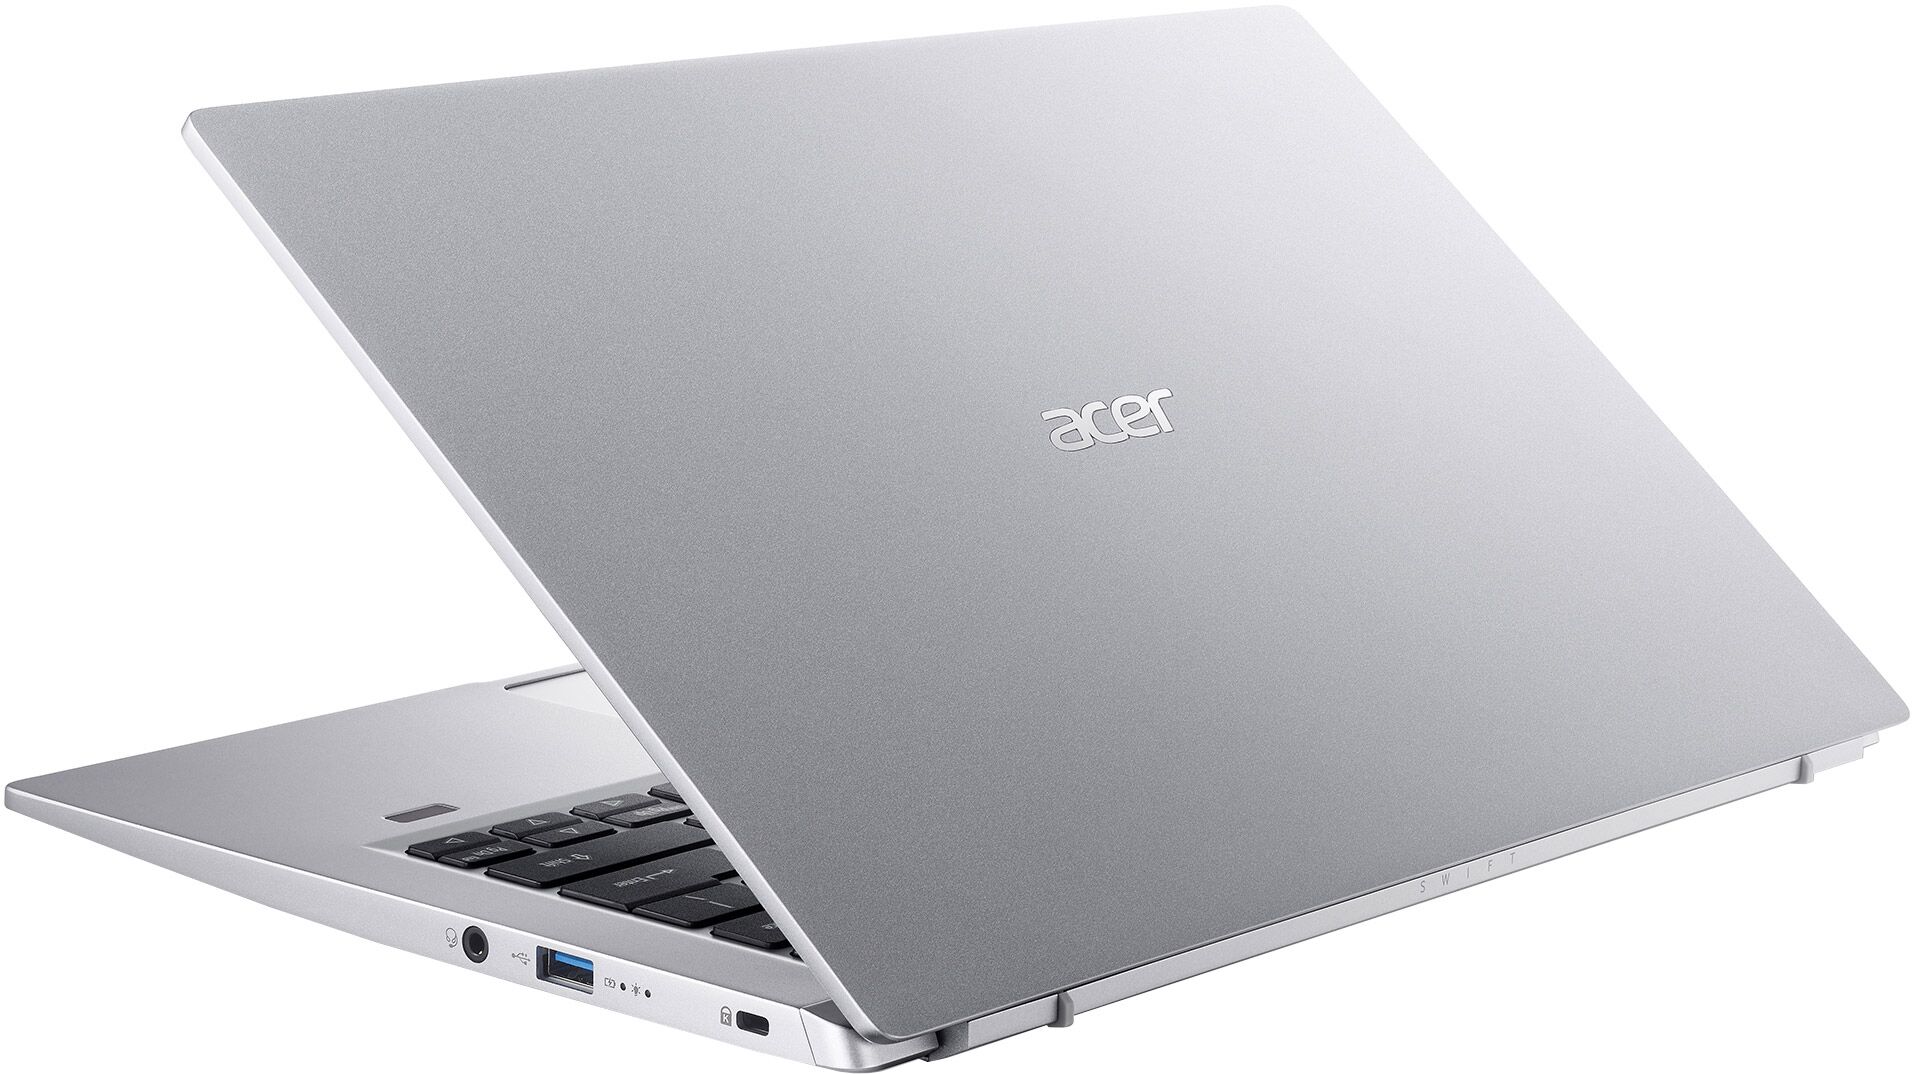 NXABNEK00A Acer Laptop 06